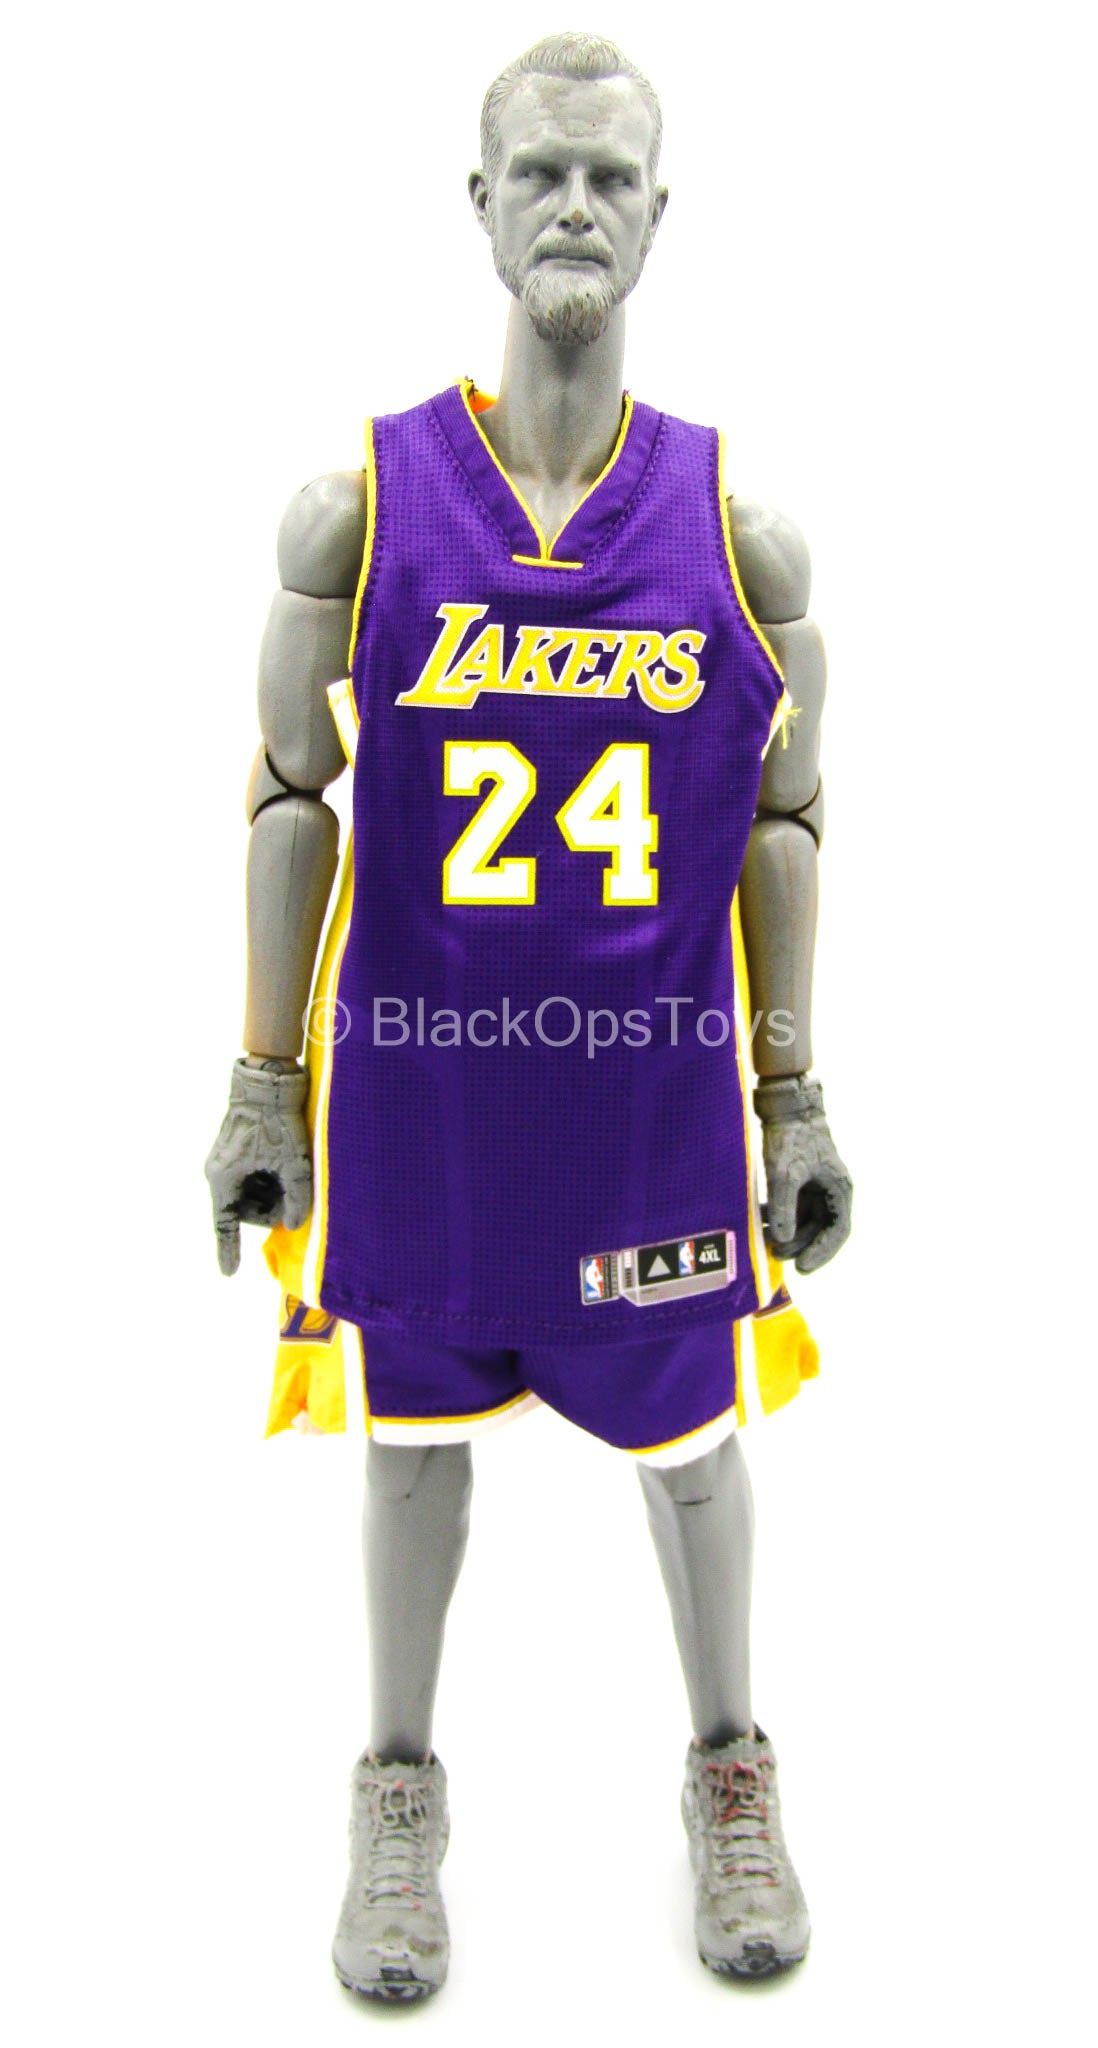 Kobe Bryant 24 Lakers Jersey Yellow